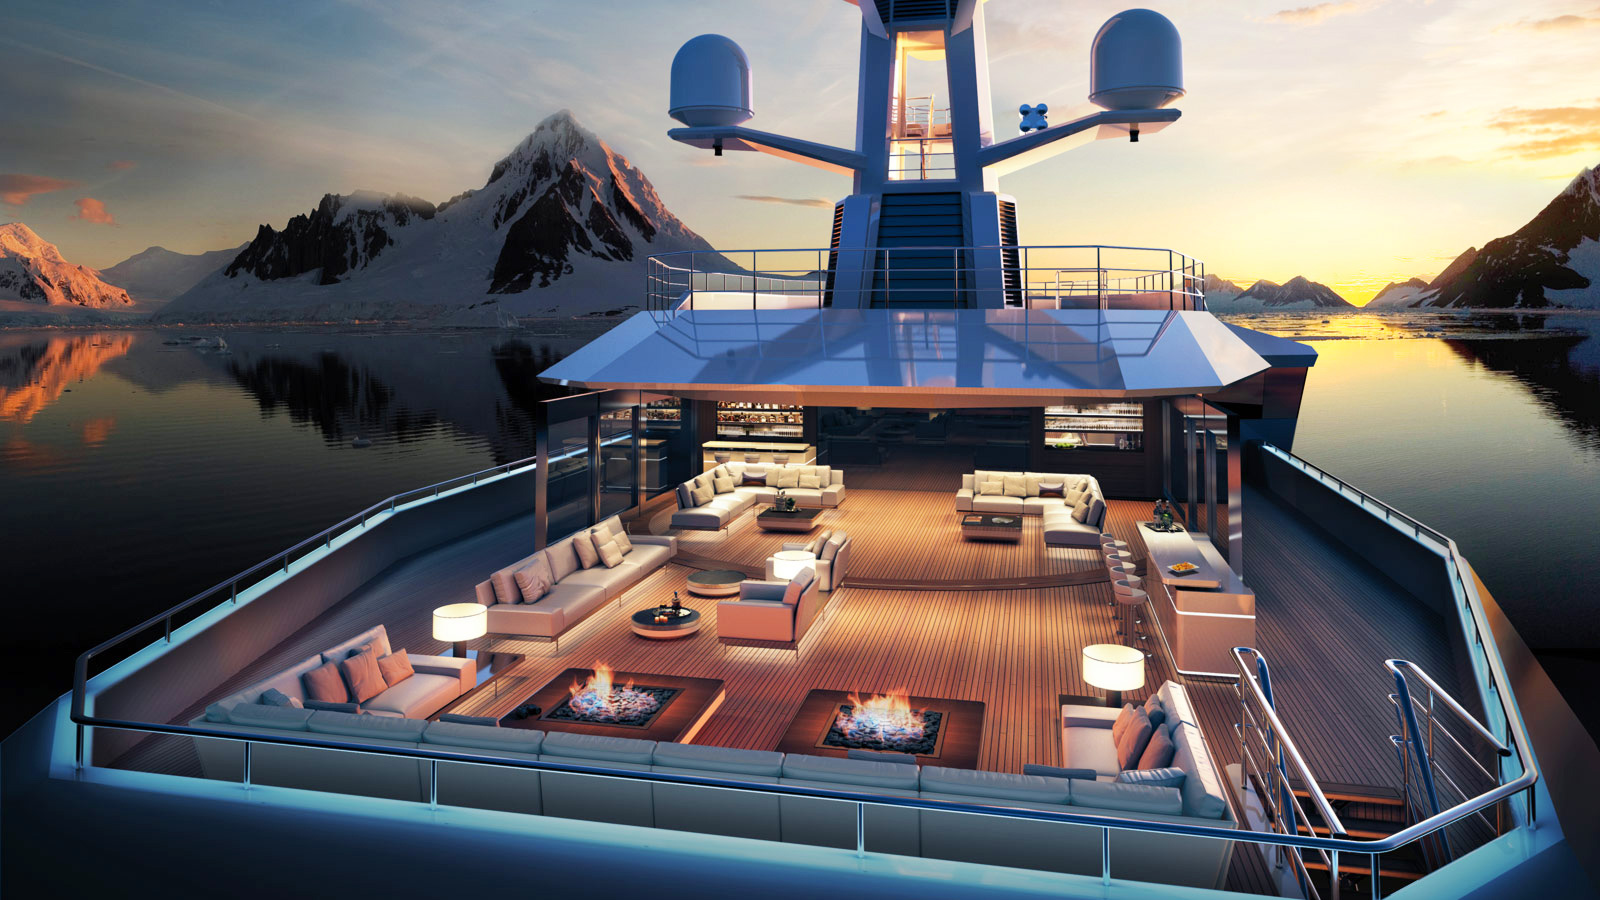 Верхняя палуба суперяхты SeaXplore представляет собой роскошный курорт с удобными шезлонгами, бассейном с подводным освещением и джакузи под открытым небом